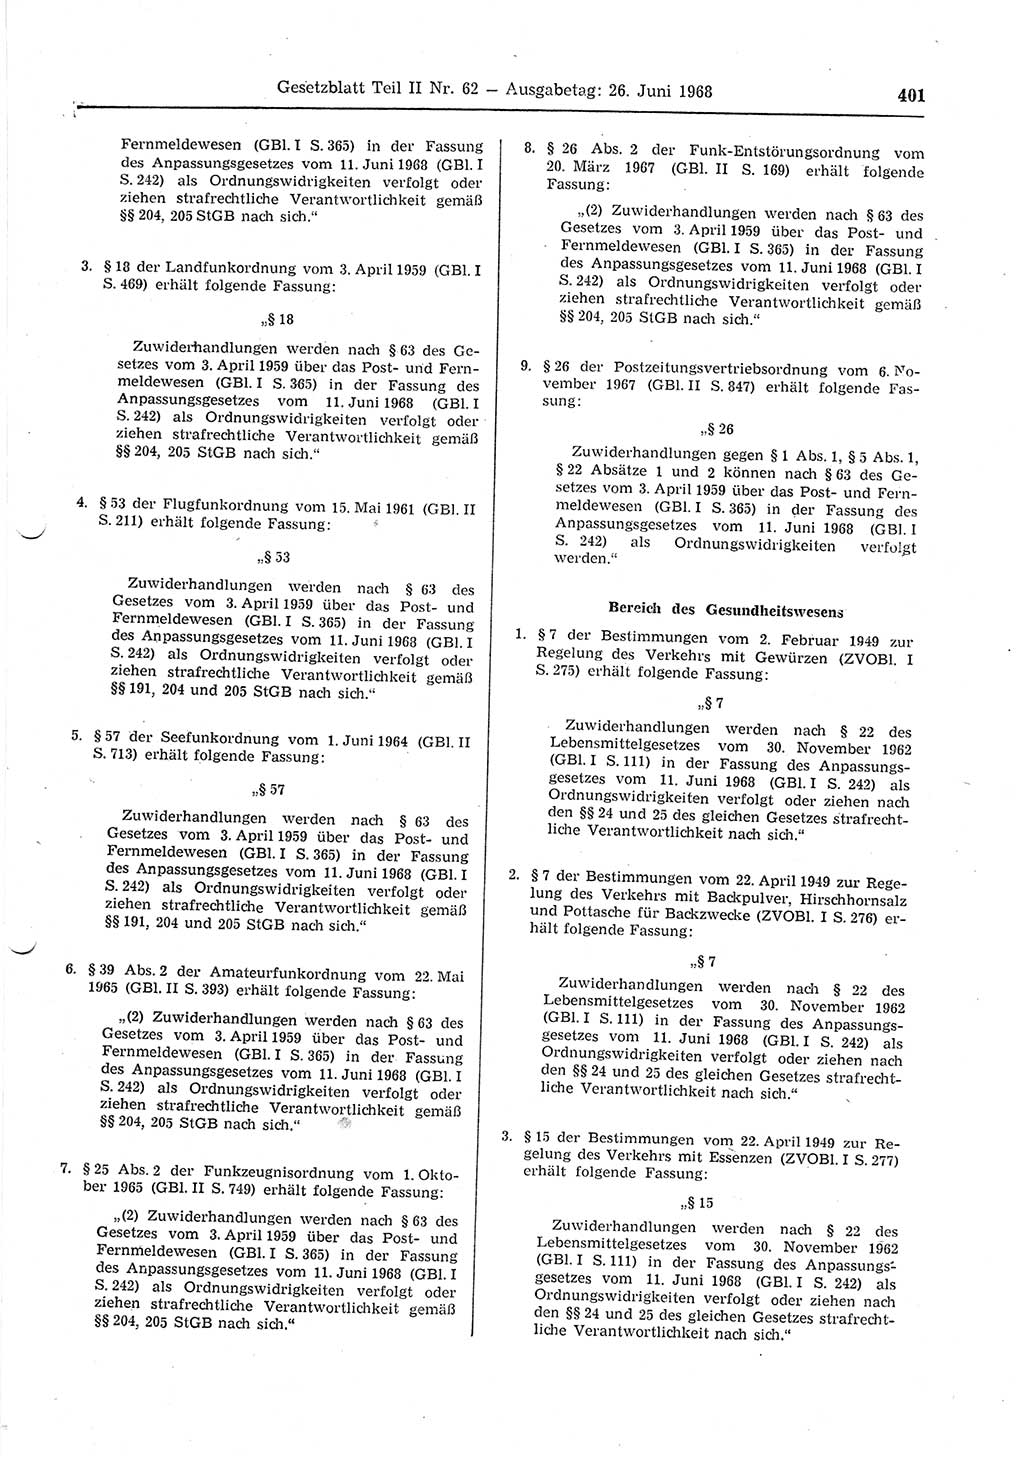 Gesetzblatt (GBl.) der Deutschen Demokratischen Republik (DDR) Teil ⅠⅠ 1968, Seite 401 (GBl. DDR ⅠⅠ 1968, S. 401)